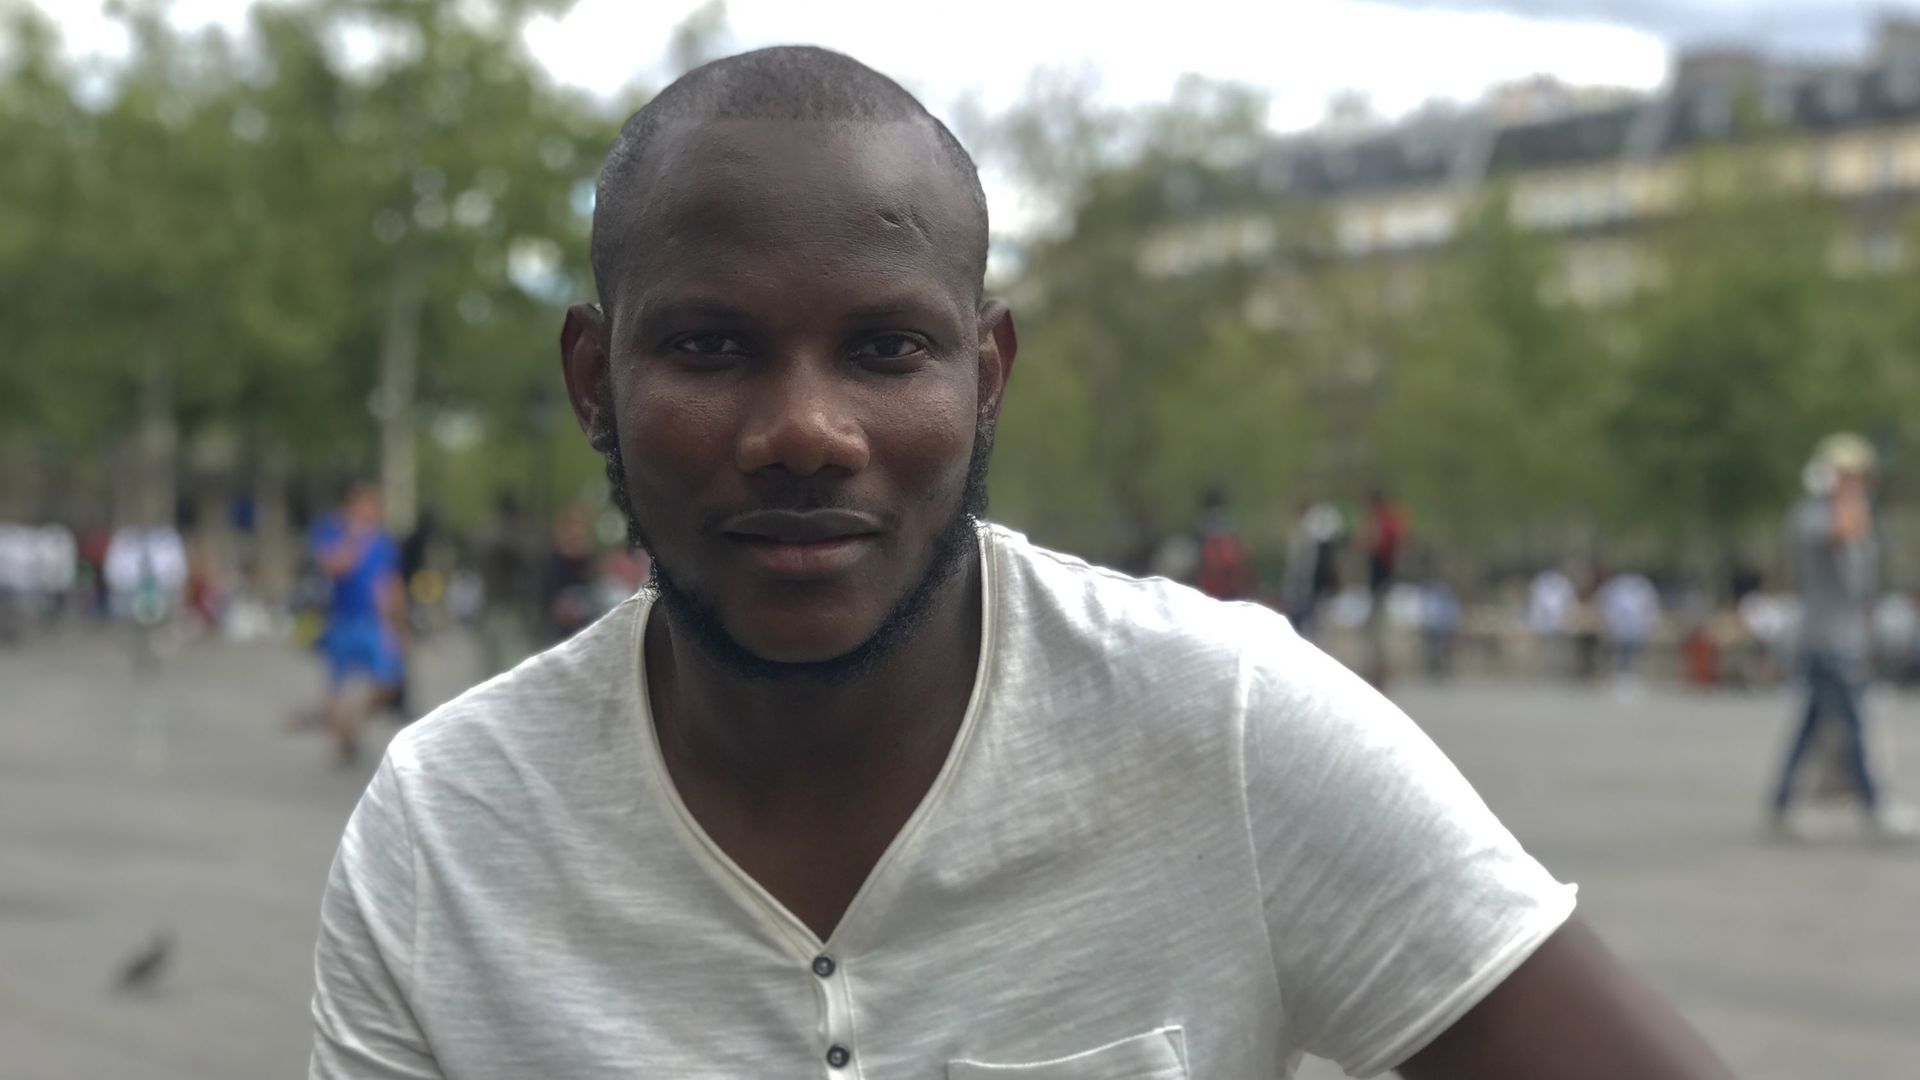 Lassana Bathily, surnommé le "héros de l'Hyper Cacher", préfère le terme de "bon citoyen"